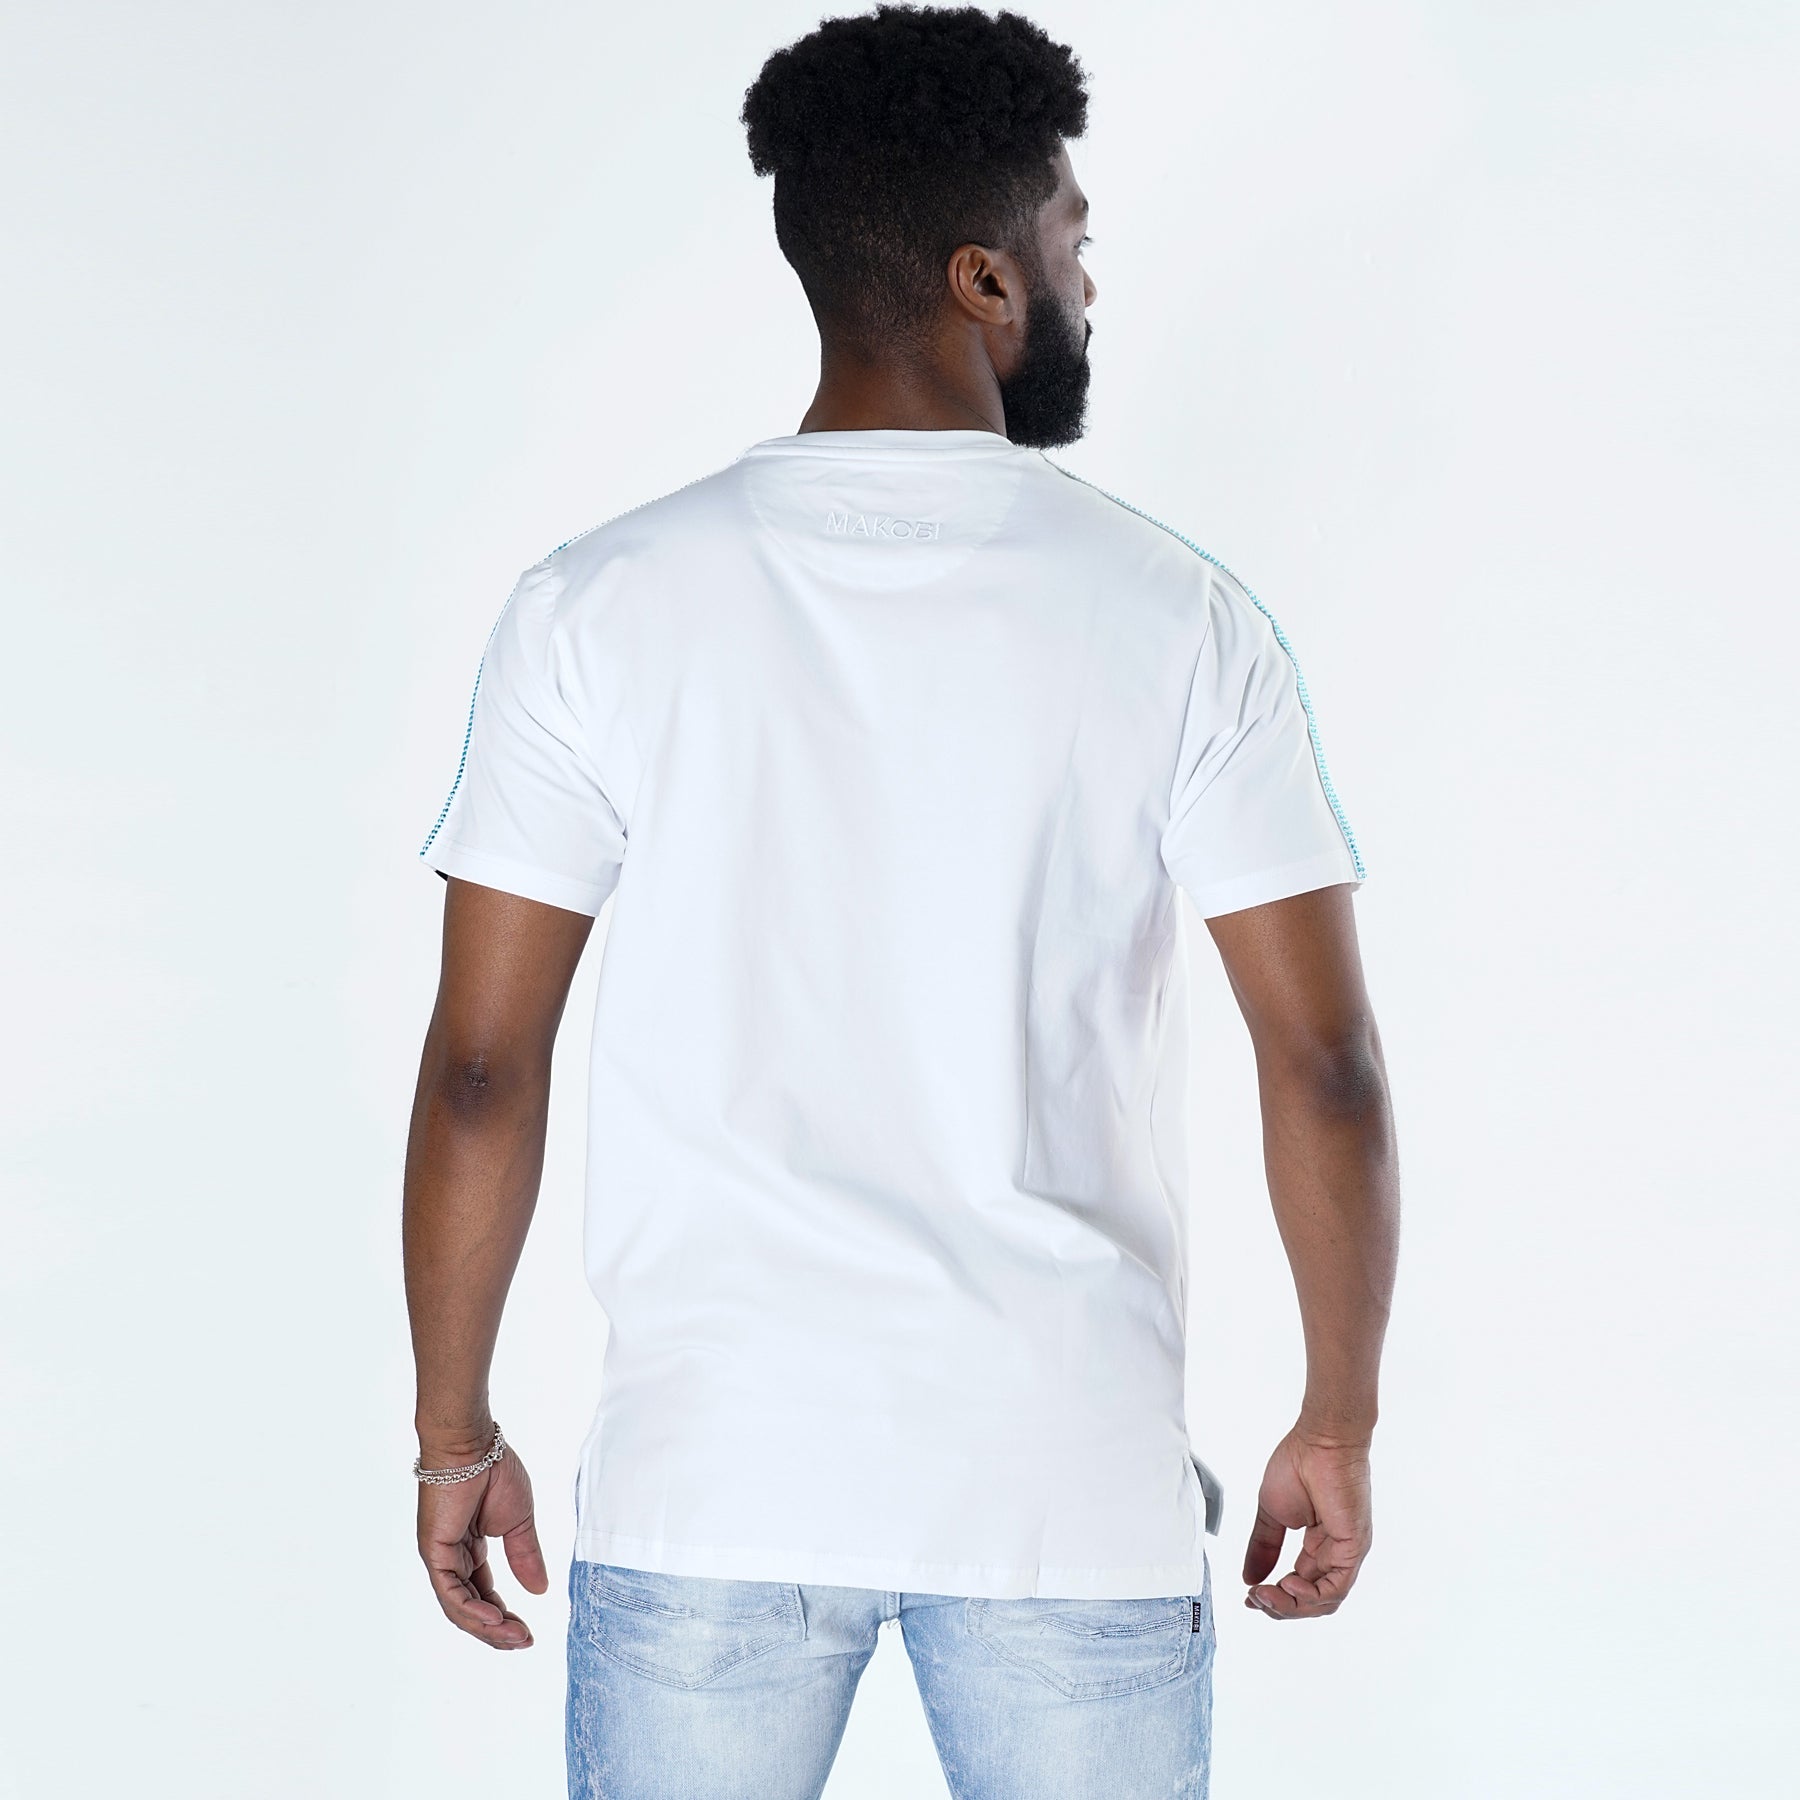 تی شرت مار رز ماکوبی M180 - سفید